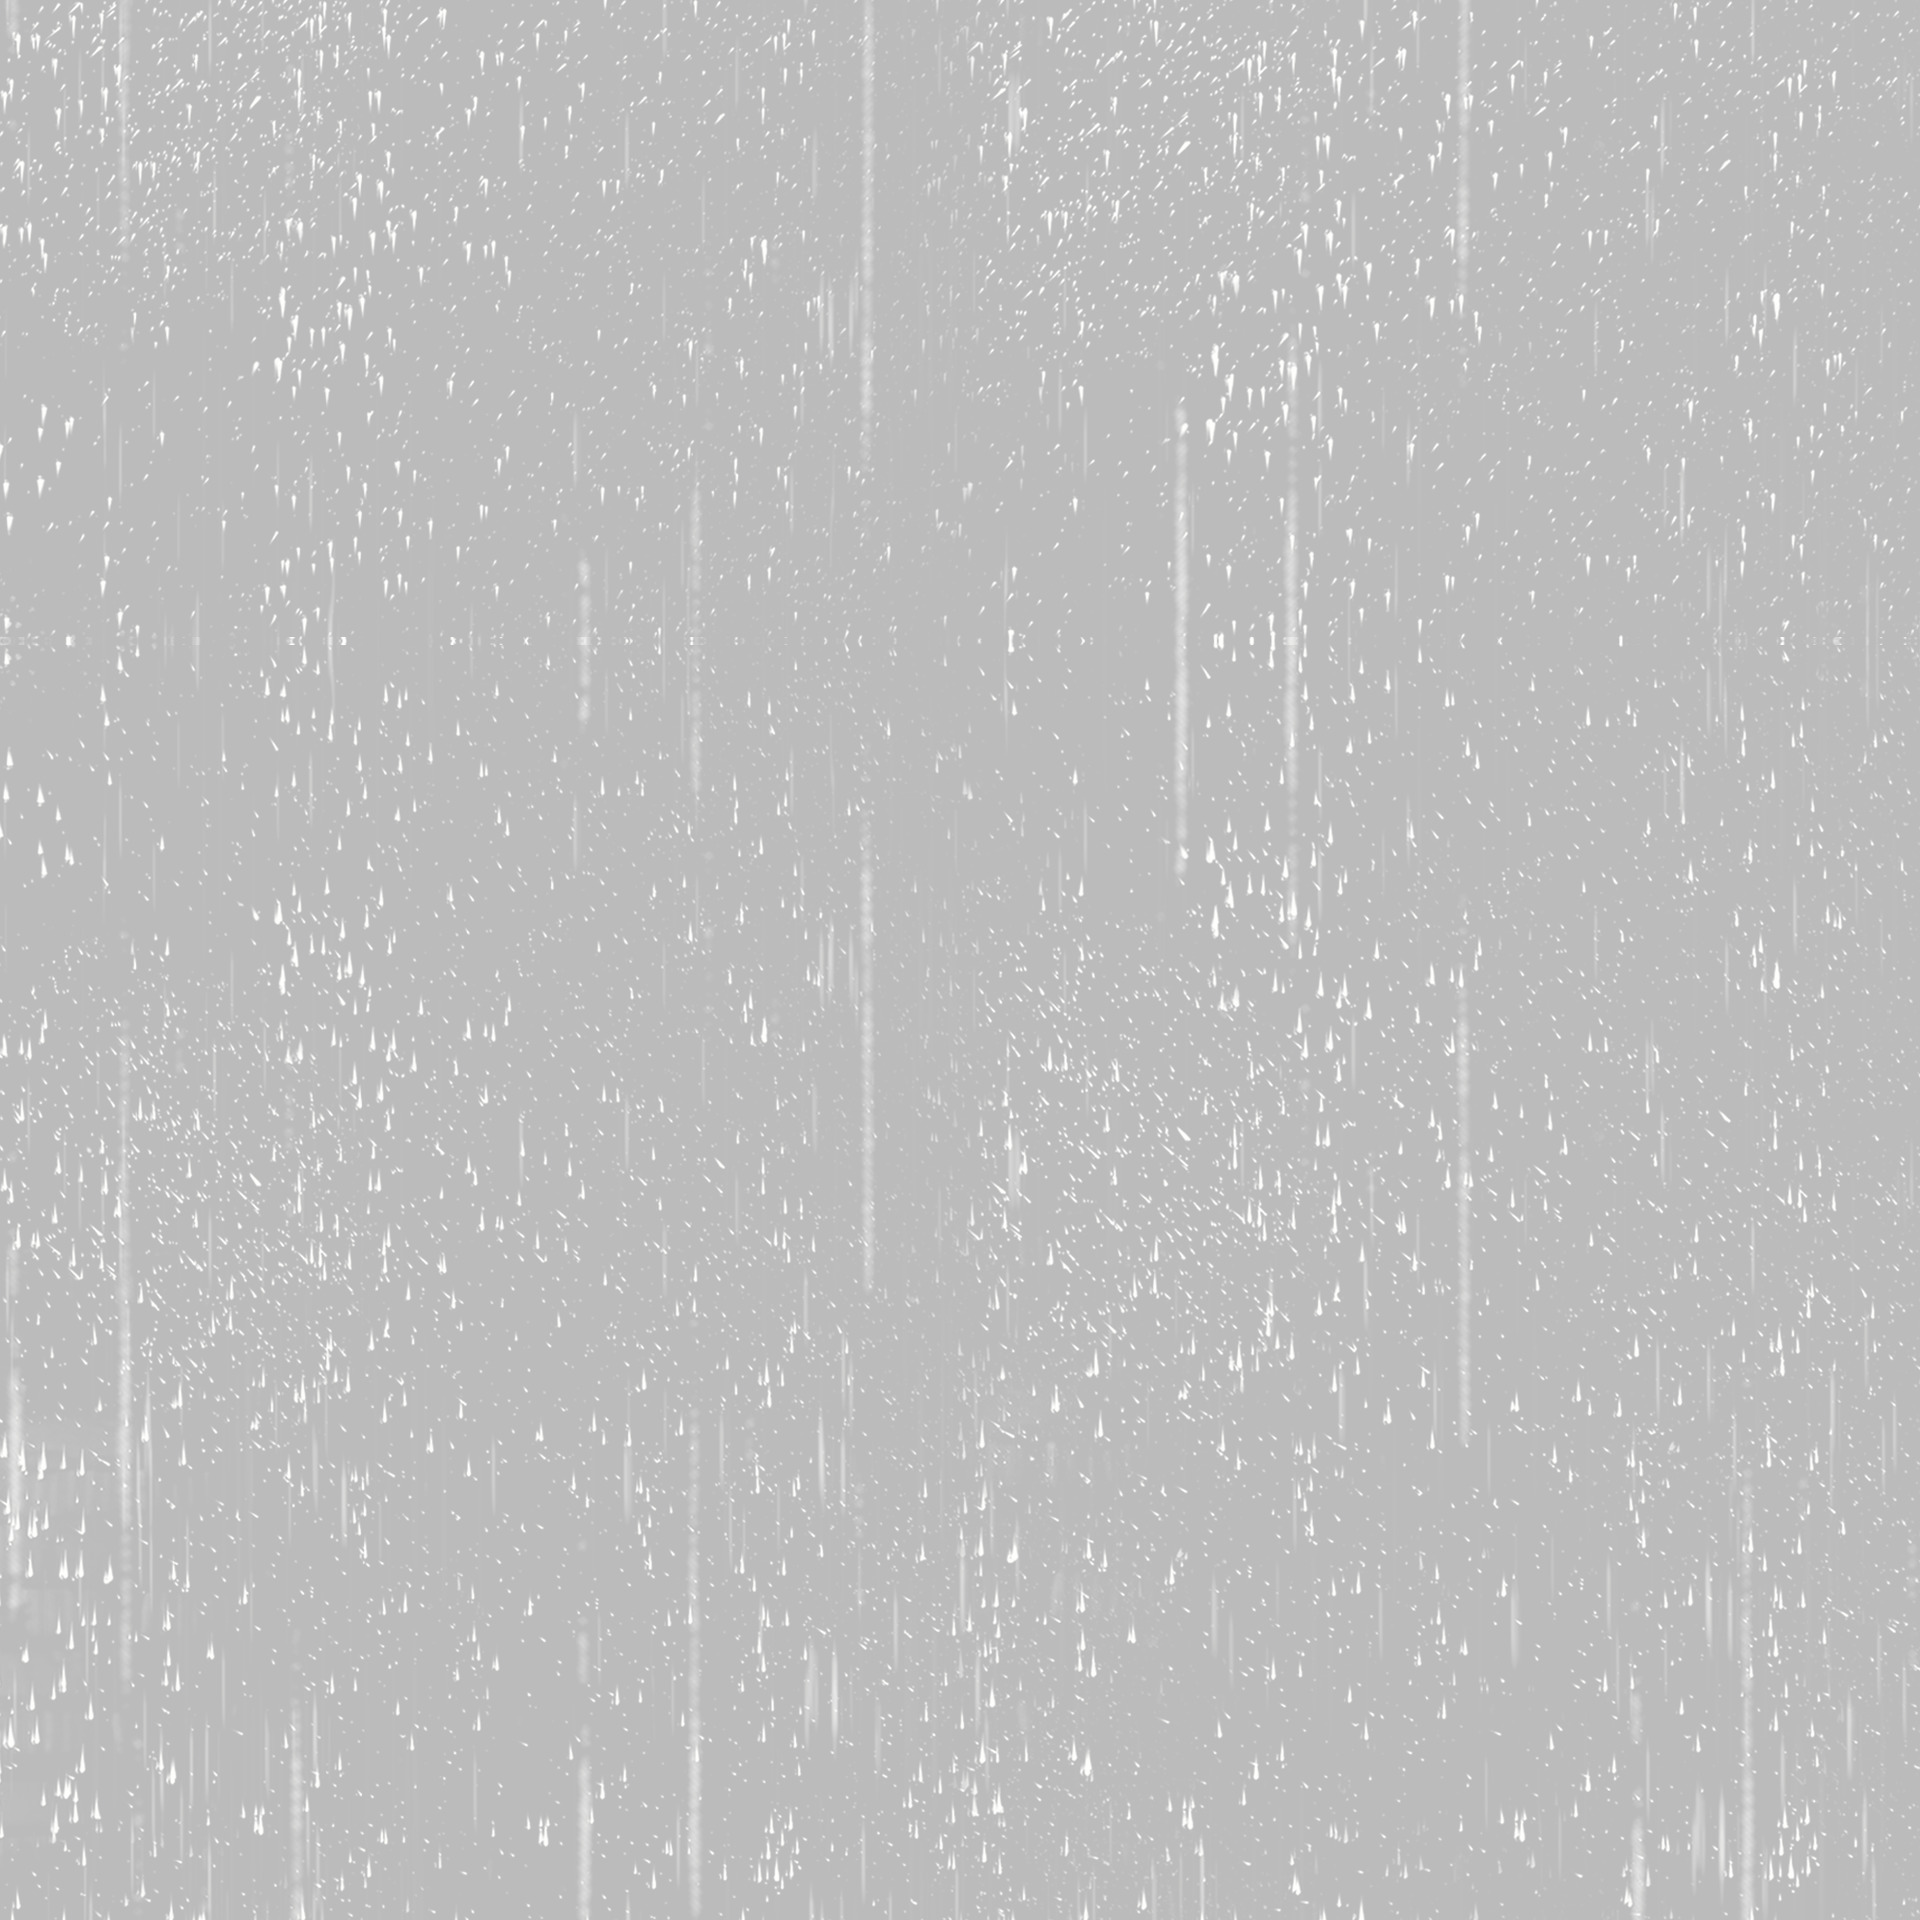 白色下雨水滴飘落元素GIF动态图下雨元素